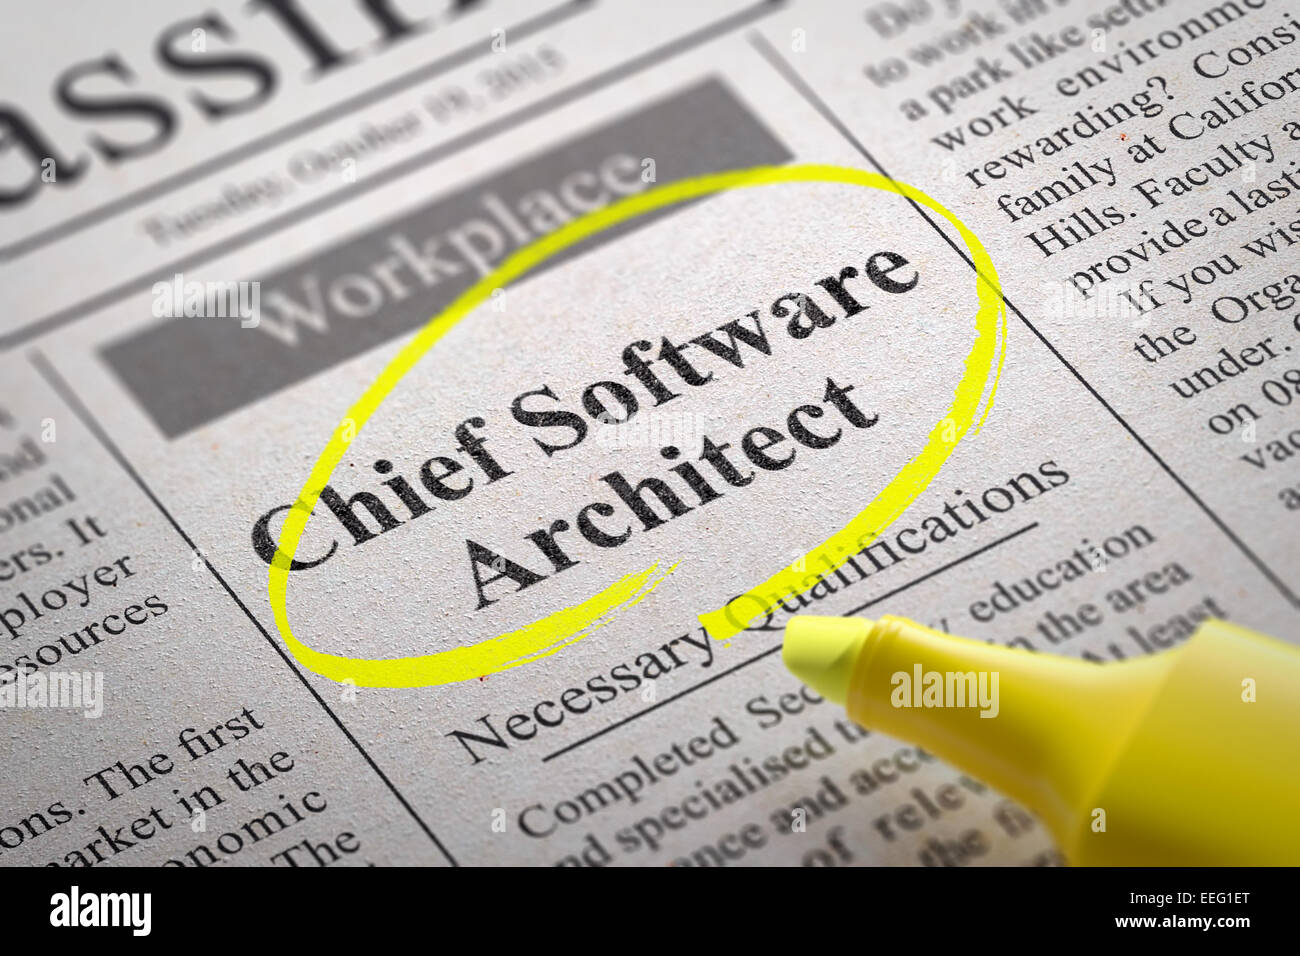 Chief Software Architect Vakanz in der Zeitung. Stockfoto